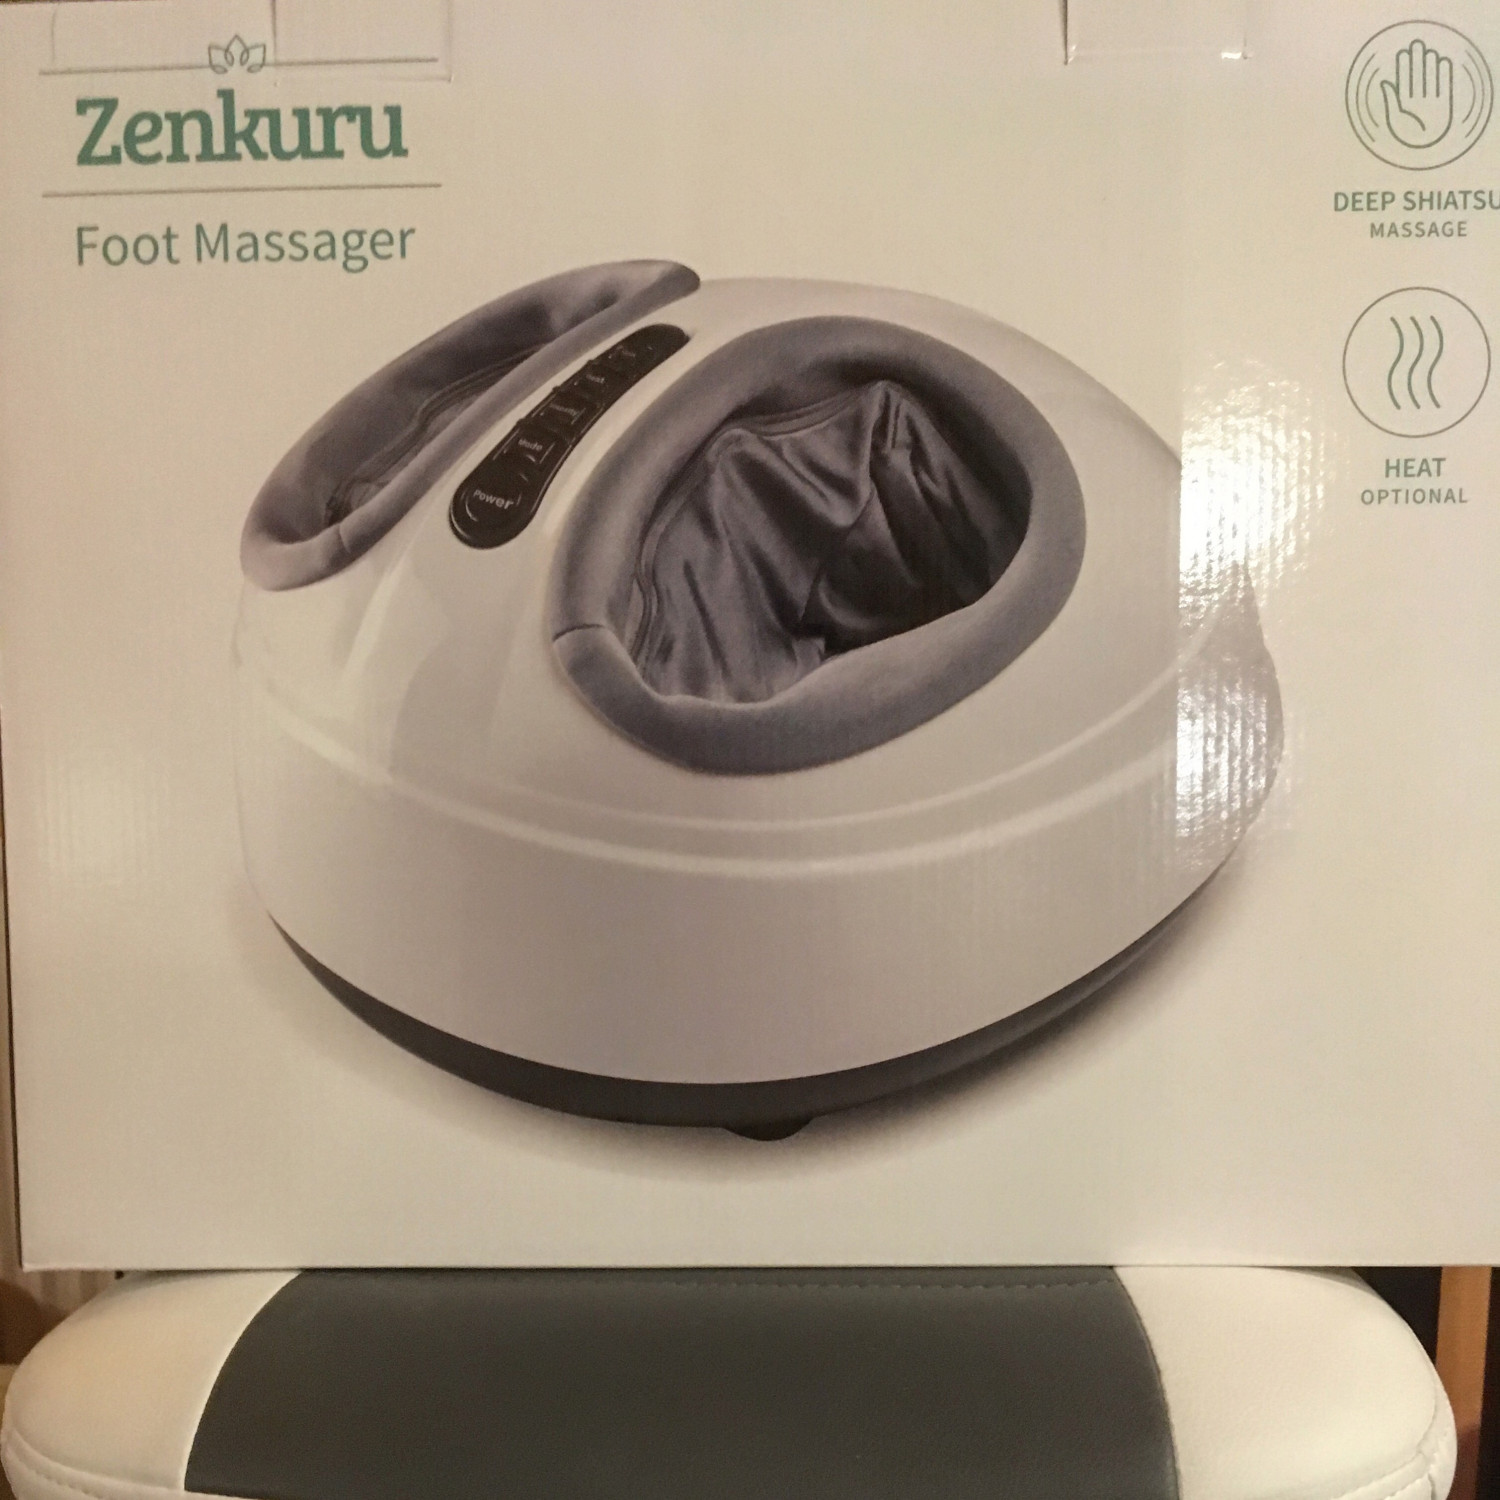 TEST af Zenkuru fodmassageapparat fra Coolstuff.dk | Sundhed | Testfamilien